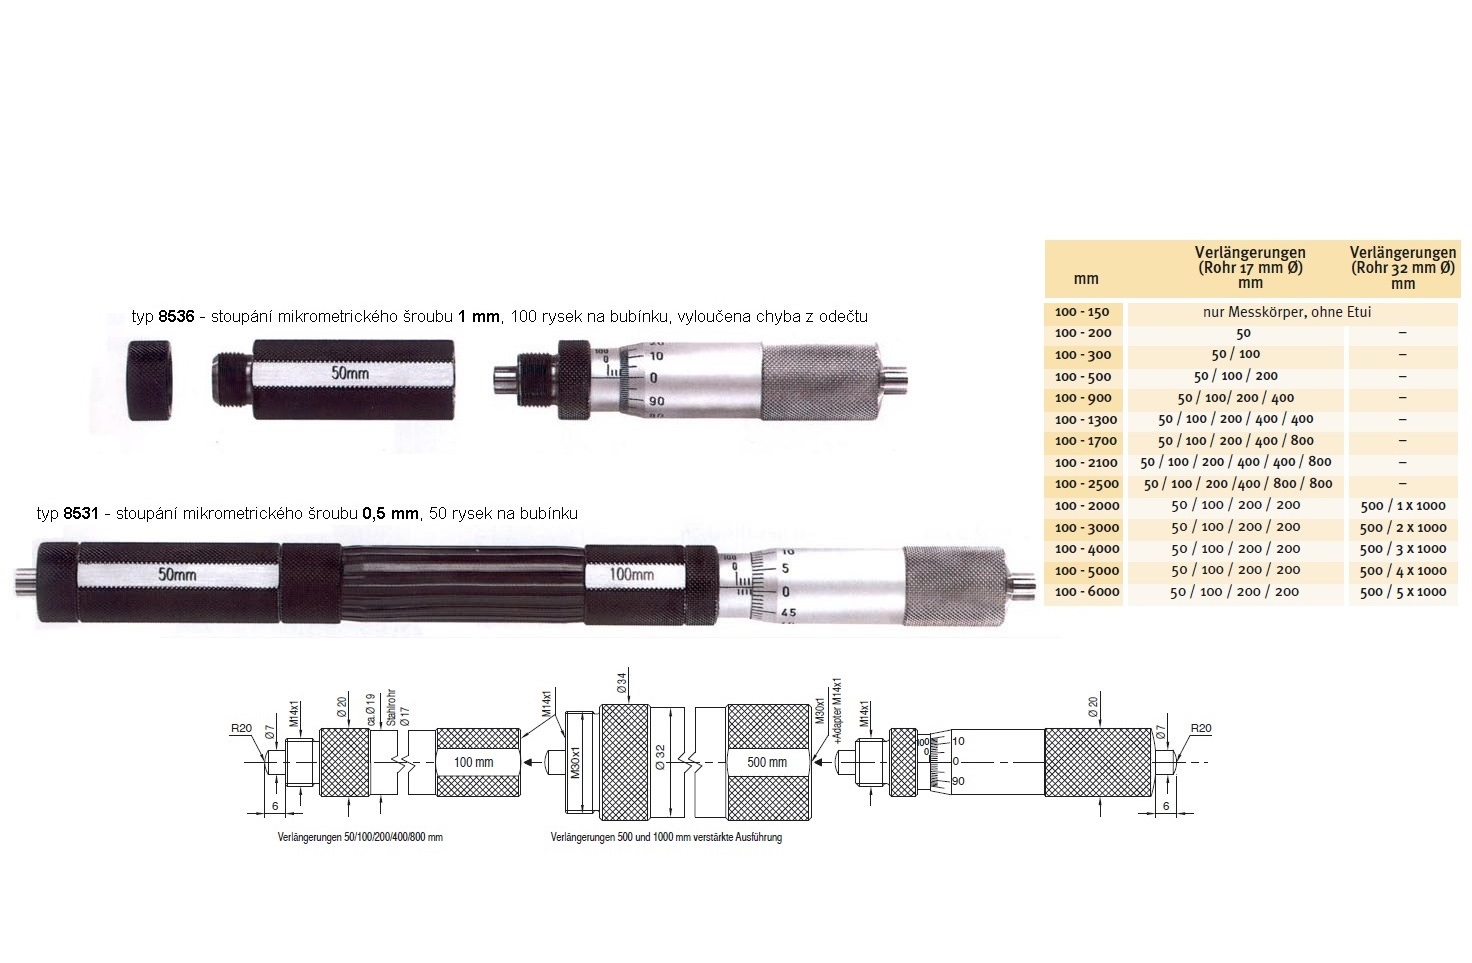 Mikrometrický odpich skládací HARTIG 100-4000 mm, stoupání šroubu 1 mm, doteky tvrdokov